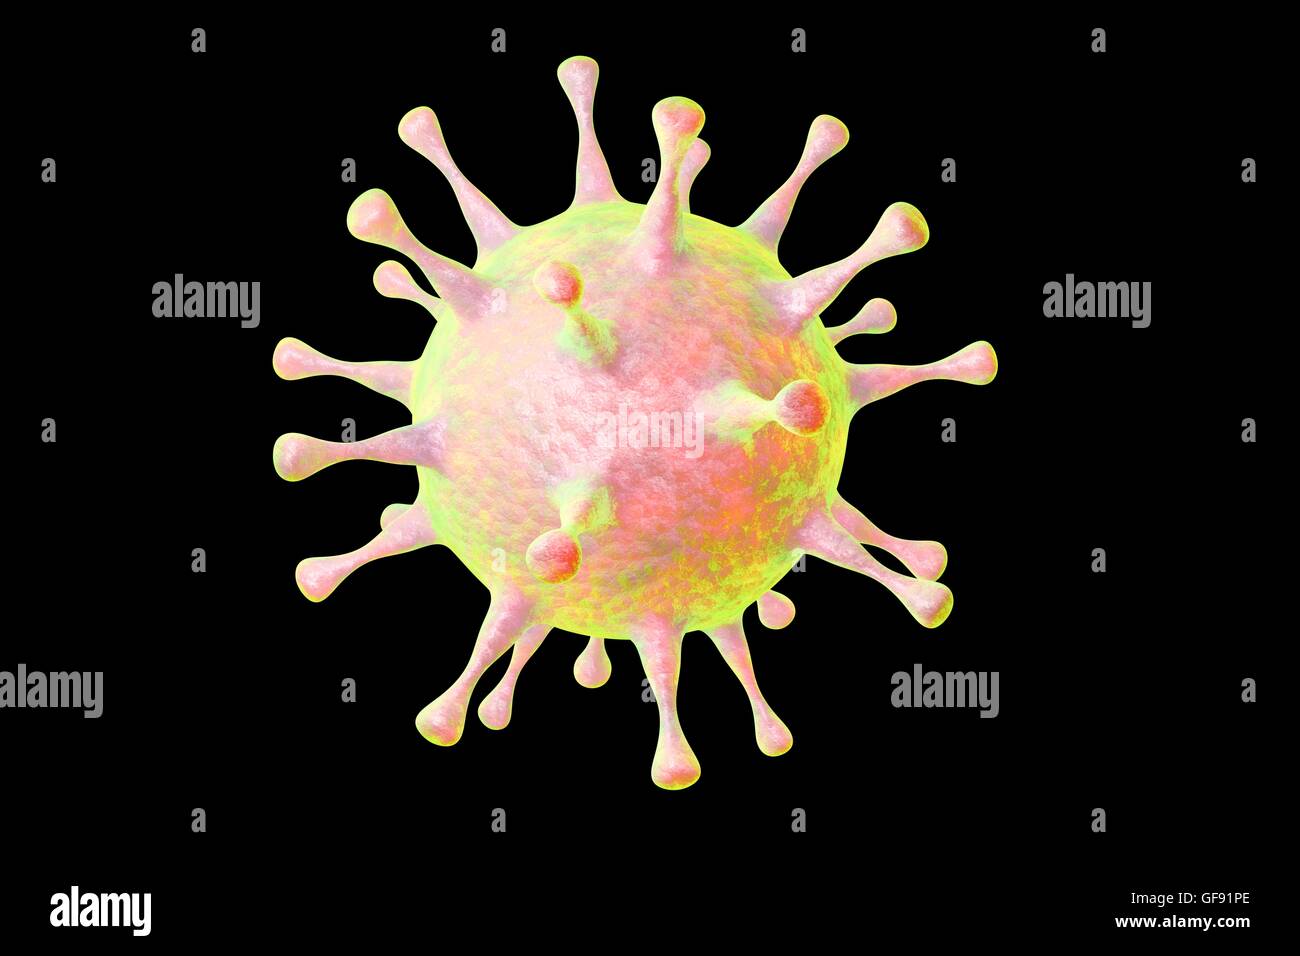 Human pathogenic virus, computer illustration. Stock Photo